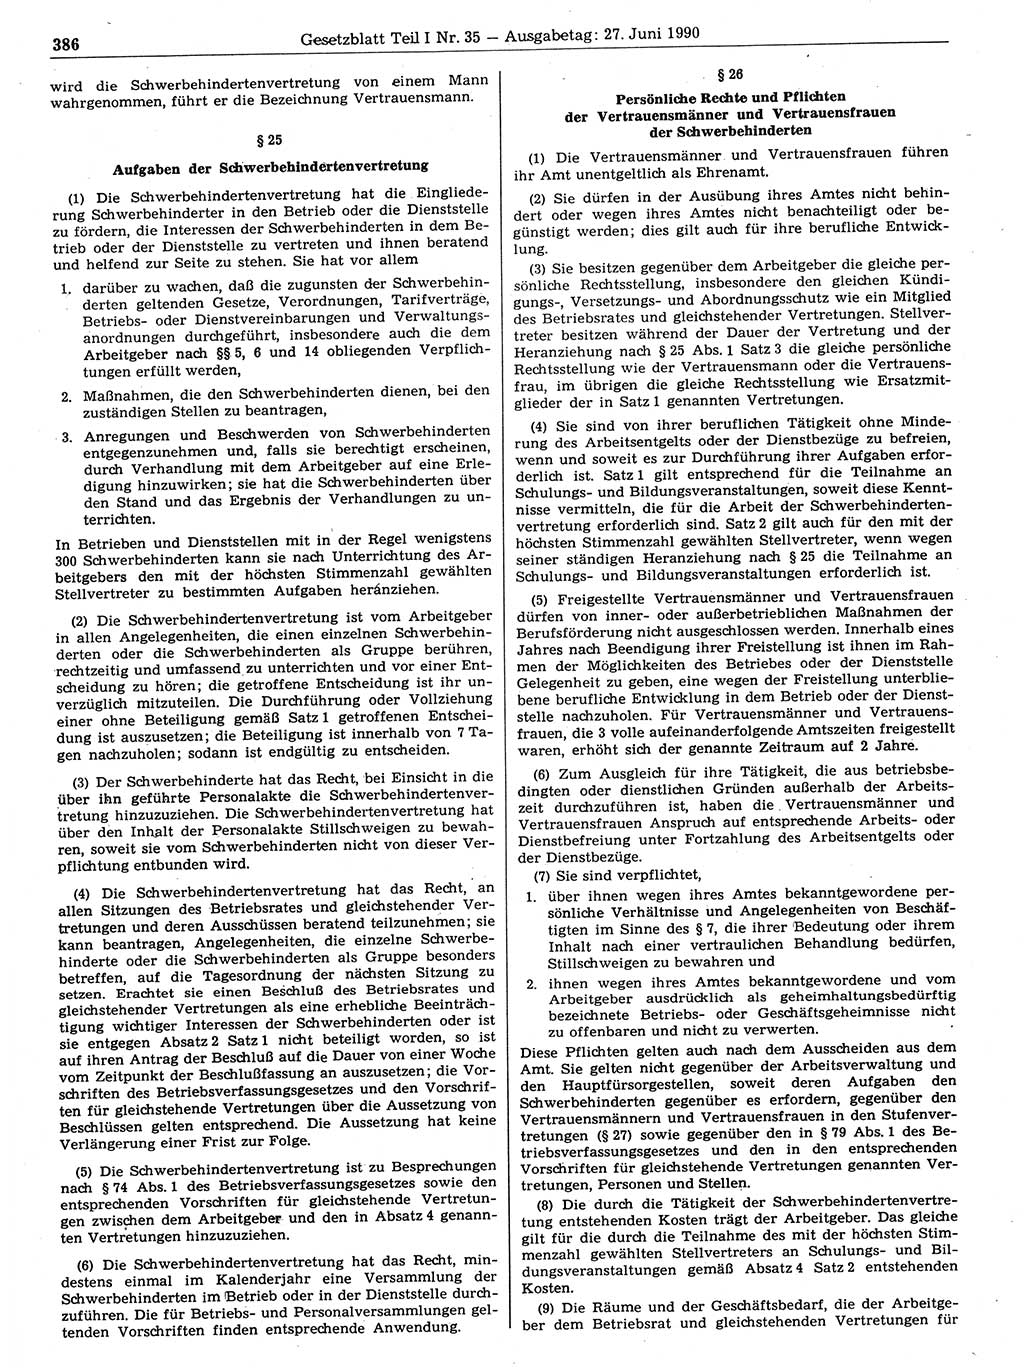 Gesetzblatt (GBl.) der Deutschen Demokratischen Republik (DDR) Teil Ⅰ 1990, Seite 386 (GBl. DDR Ⅰ 1990, S. 386)